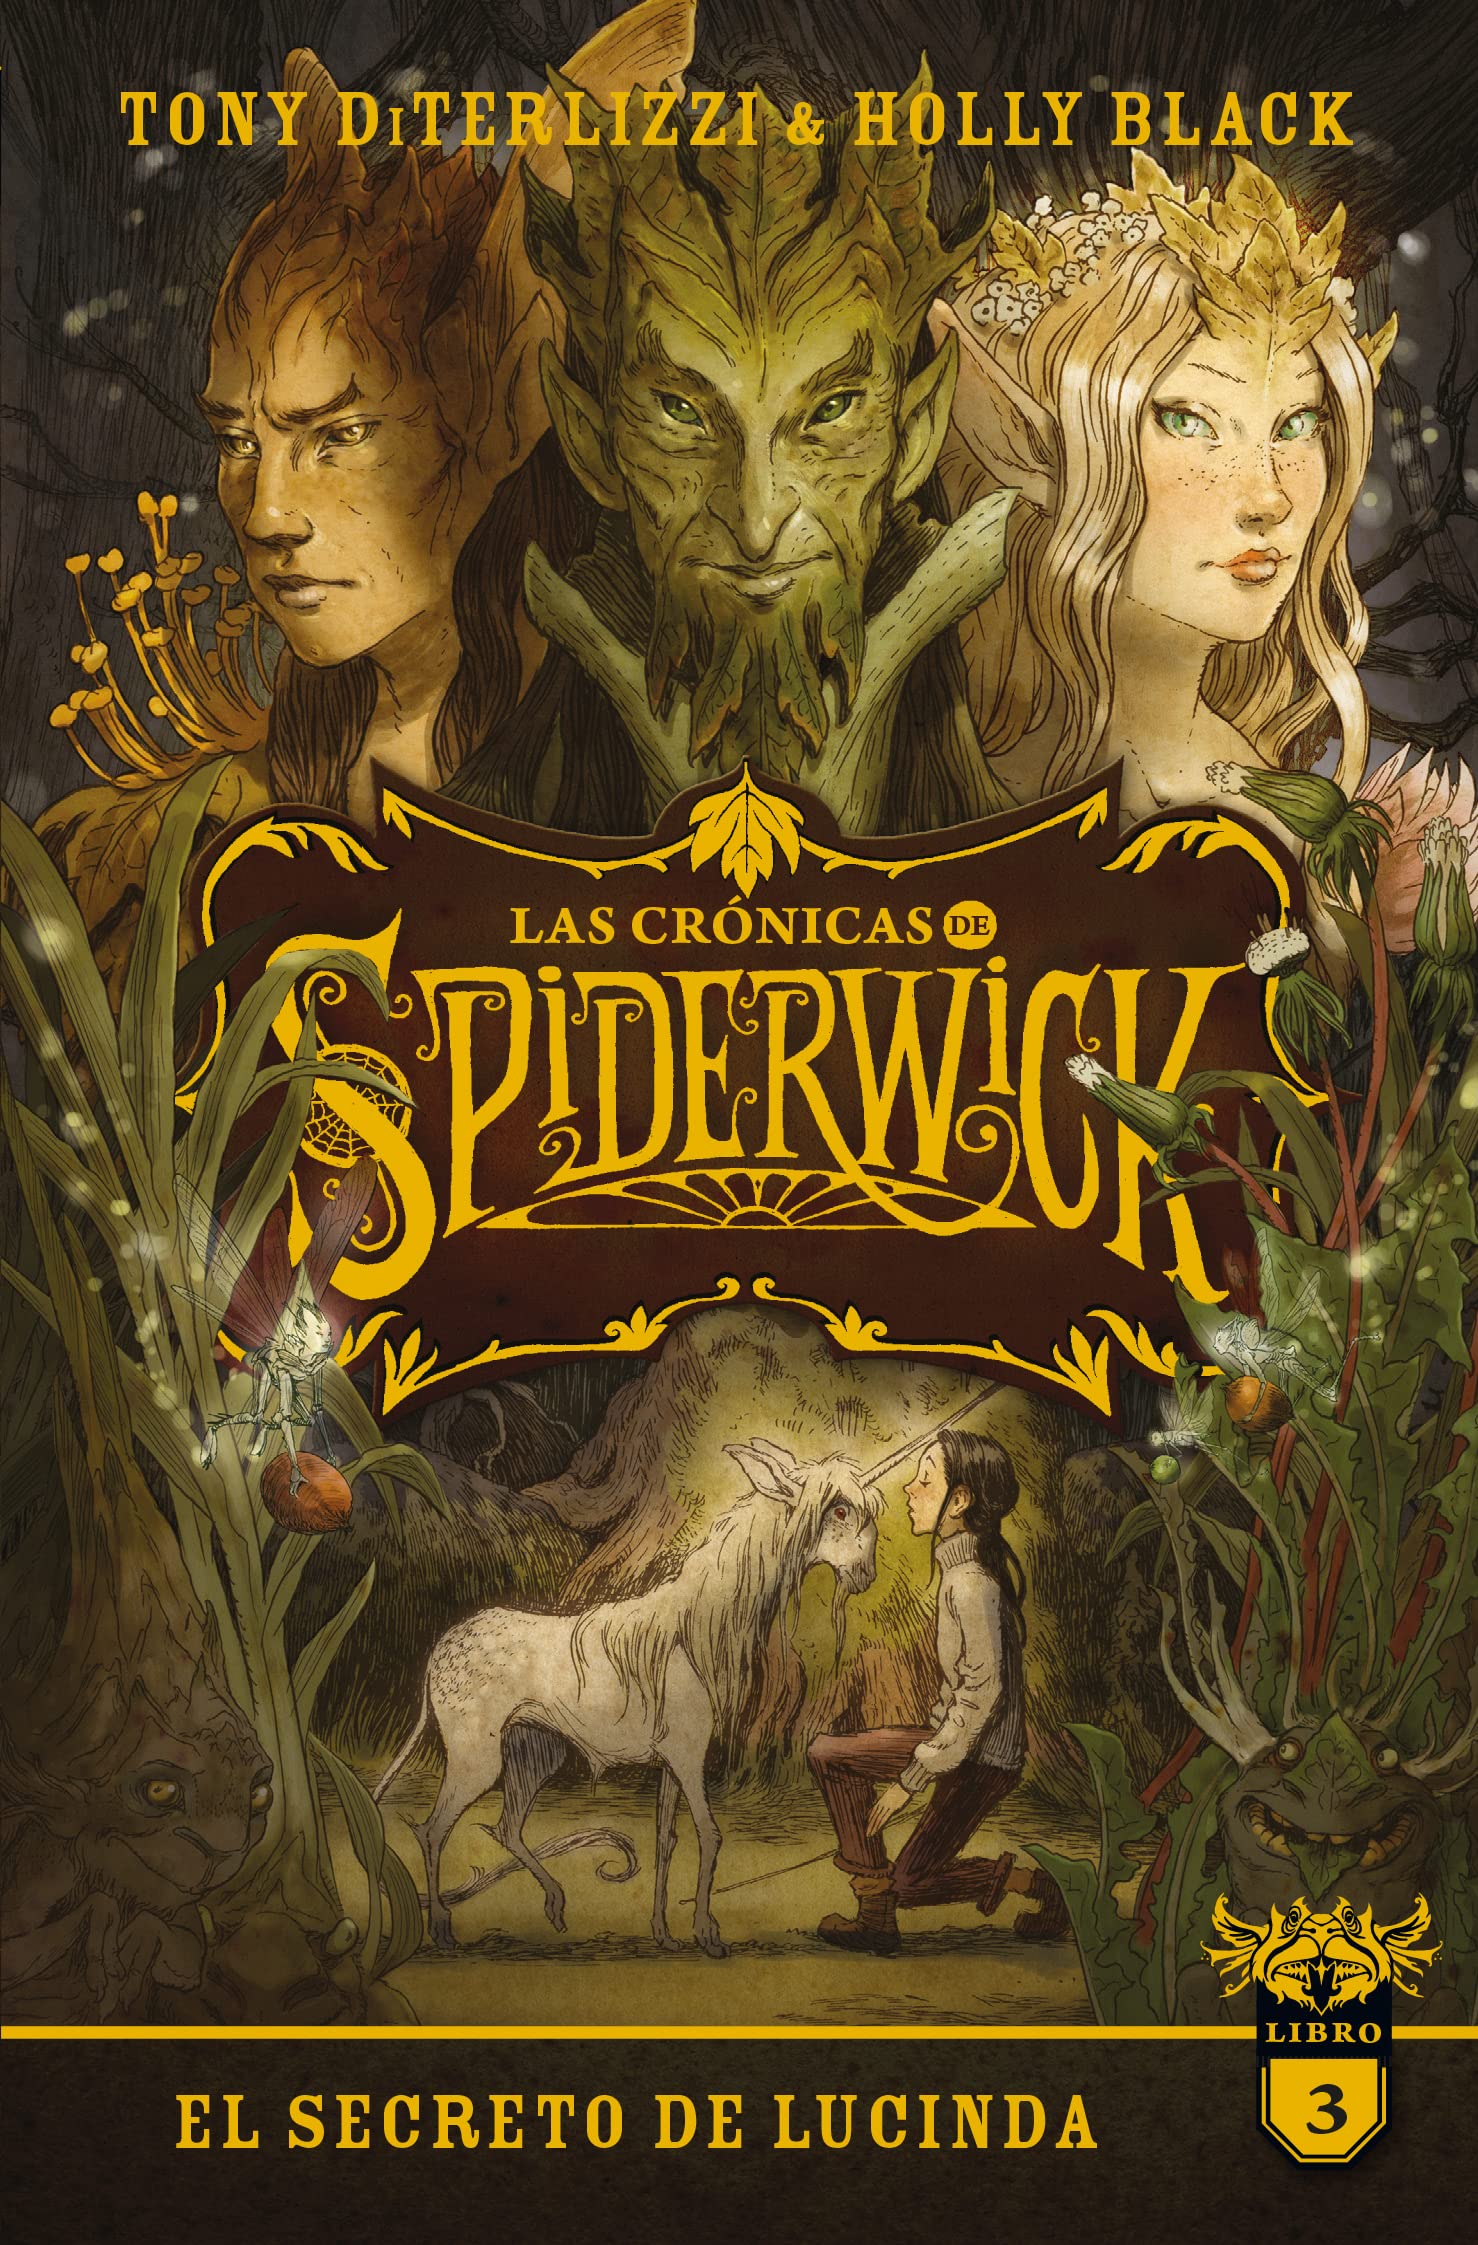 Libro: El Secreto de Lucinda - Las Crónicas de Spiderwick 3 por Holly Black y Tony Diterlizzi